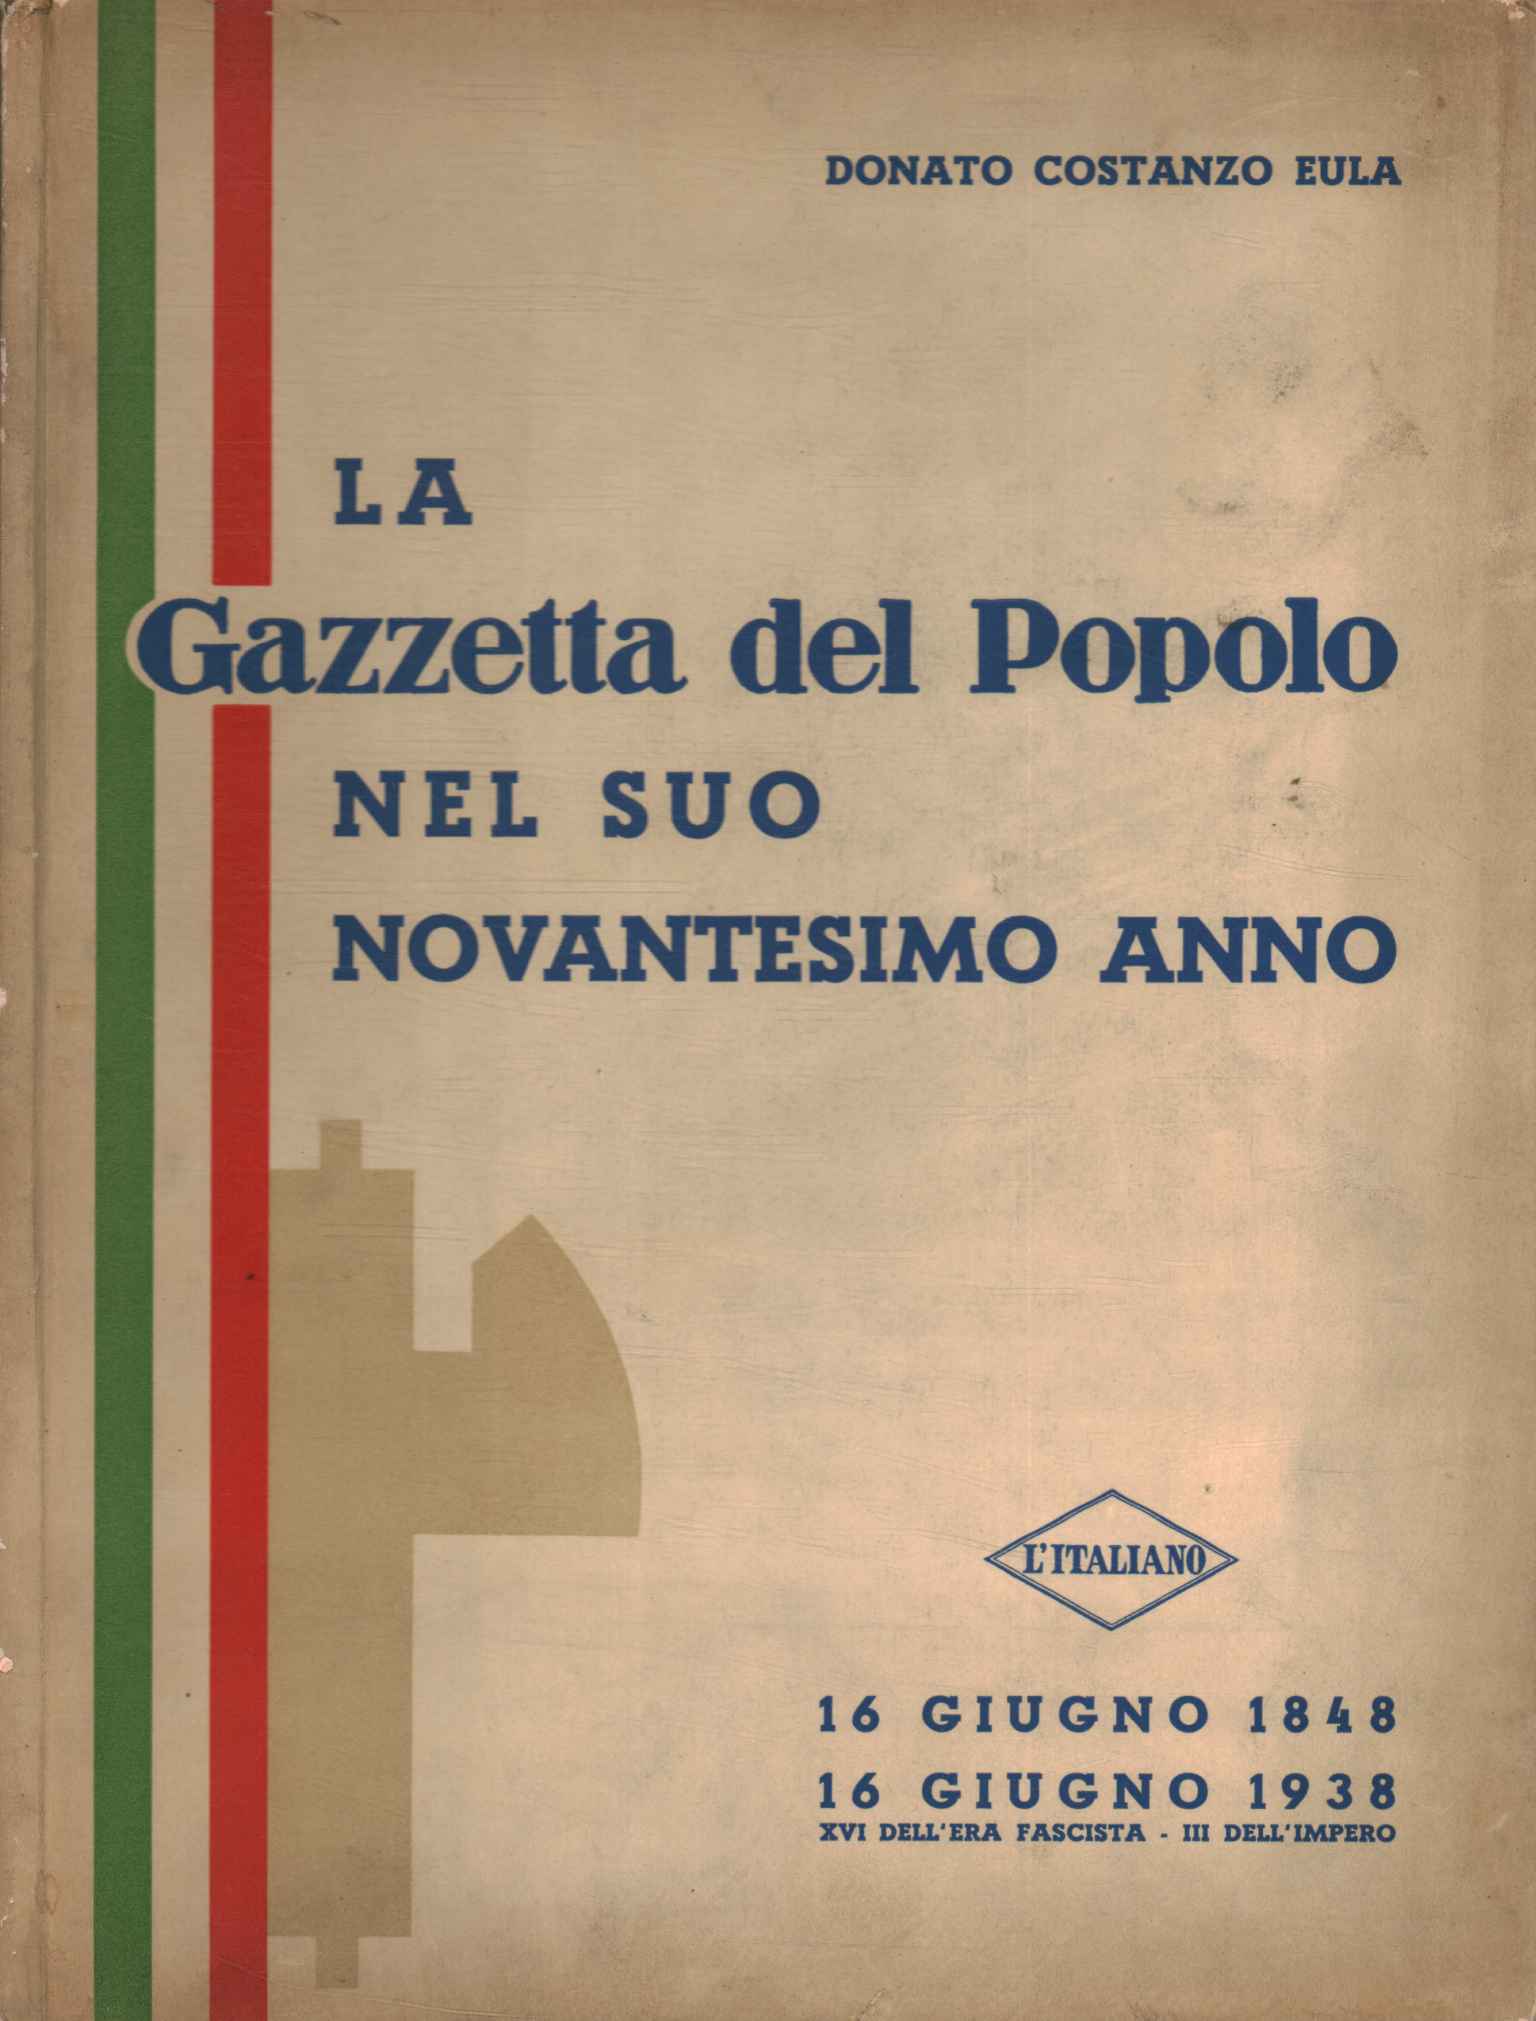 The Gazzetta del Popolo